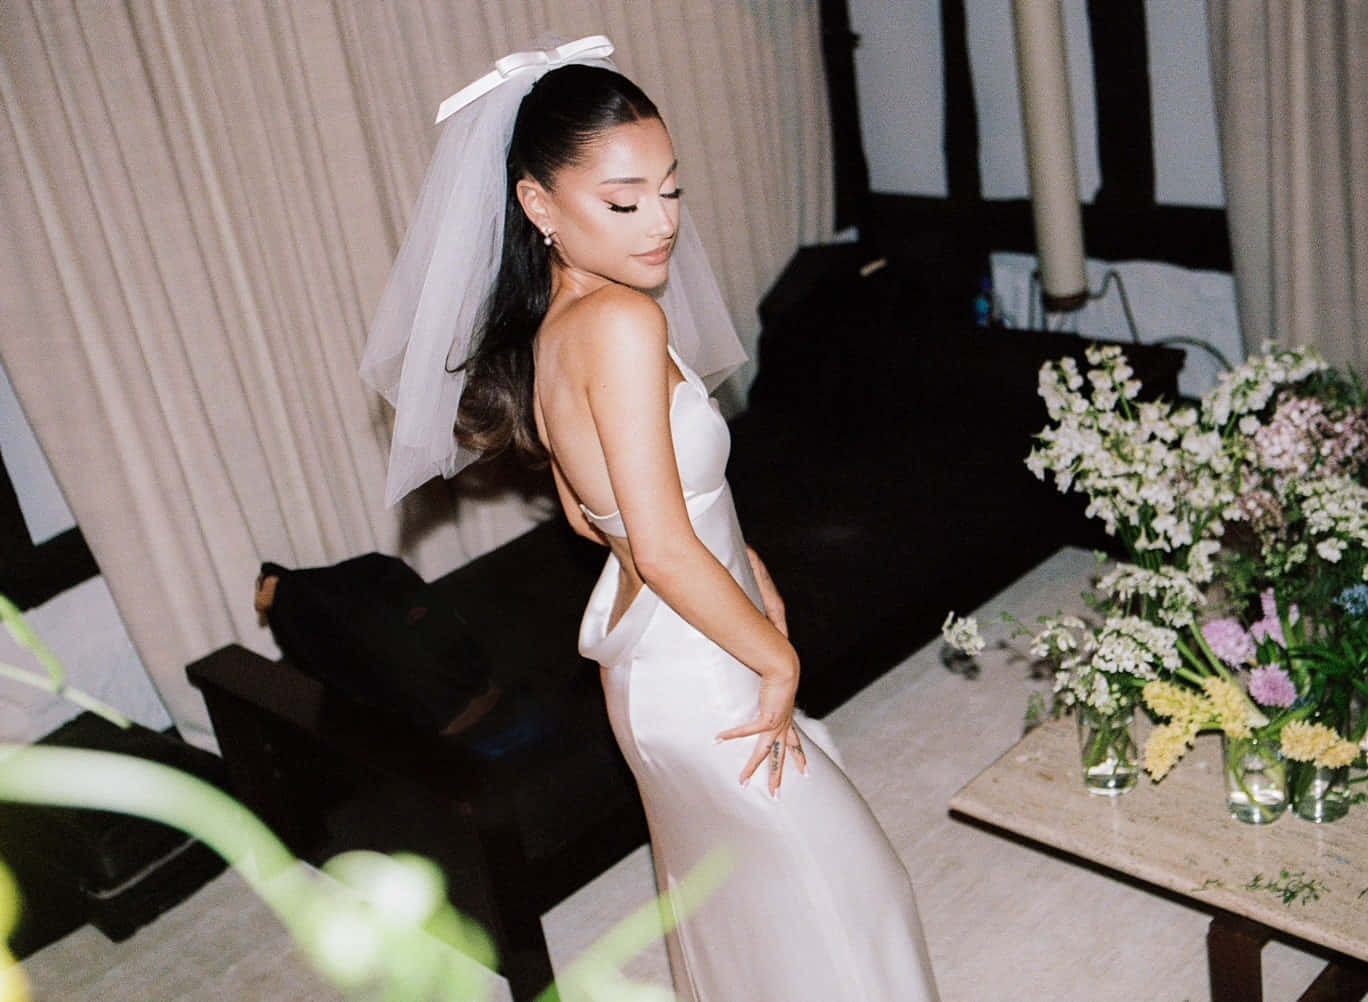 Ariana Grande optræder i hendes brudekjole billede tapet.